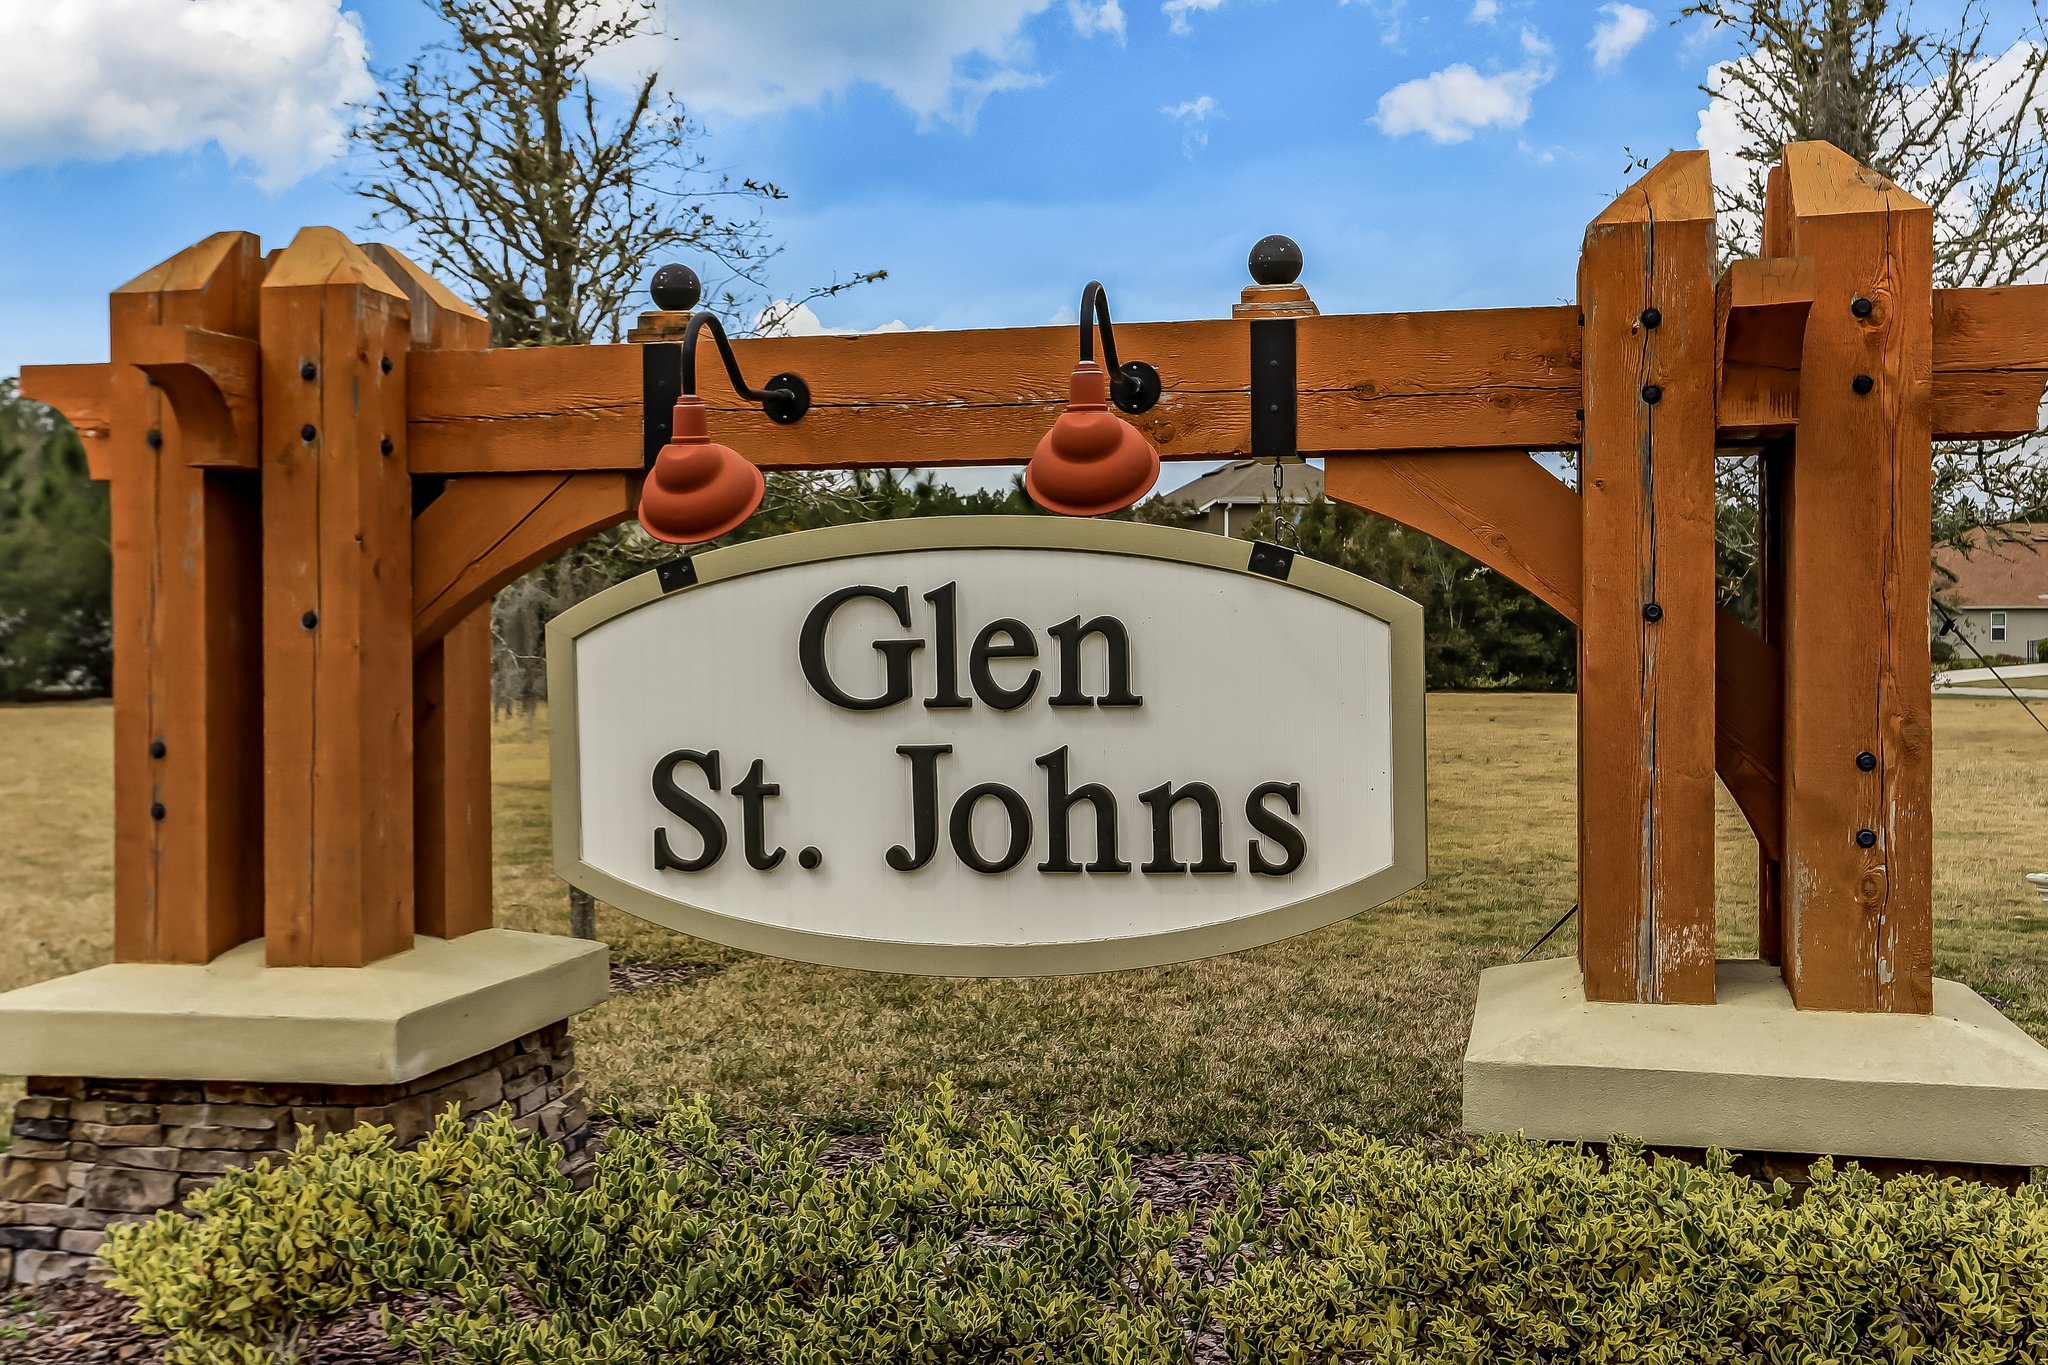 Glen St. Johns